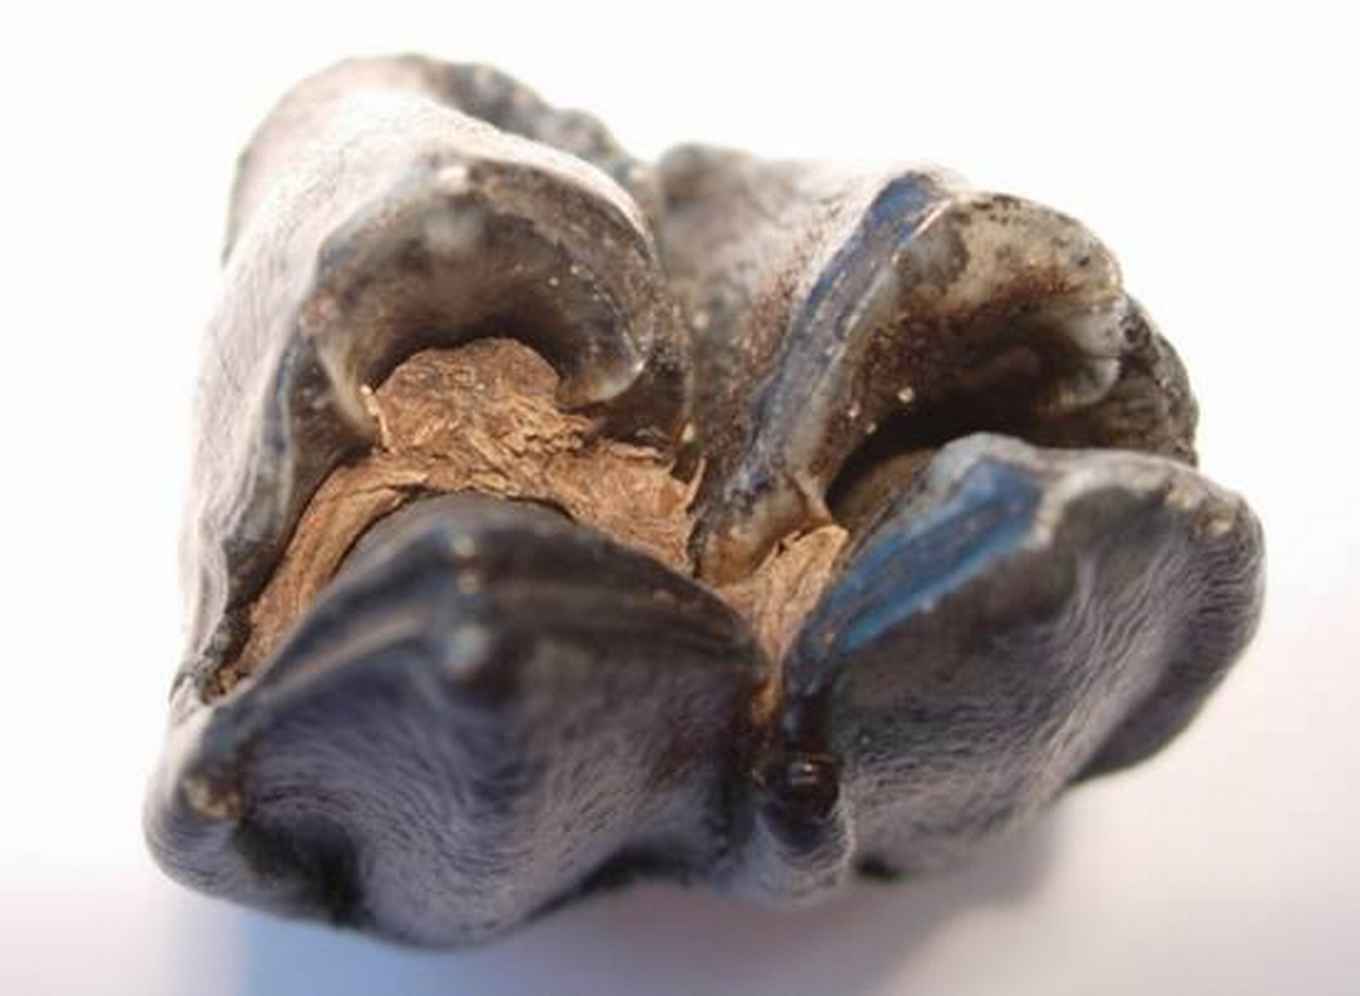 Kies van het uitgestorven reuzenhert, gevonden in opgespoten zand afkomstig van de bodem van de Noordzee. In de plooien van de kies zijn lichtbruin gekleurde plantenresten zichtbaar.